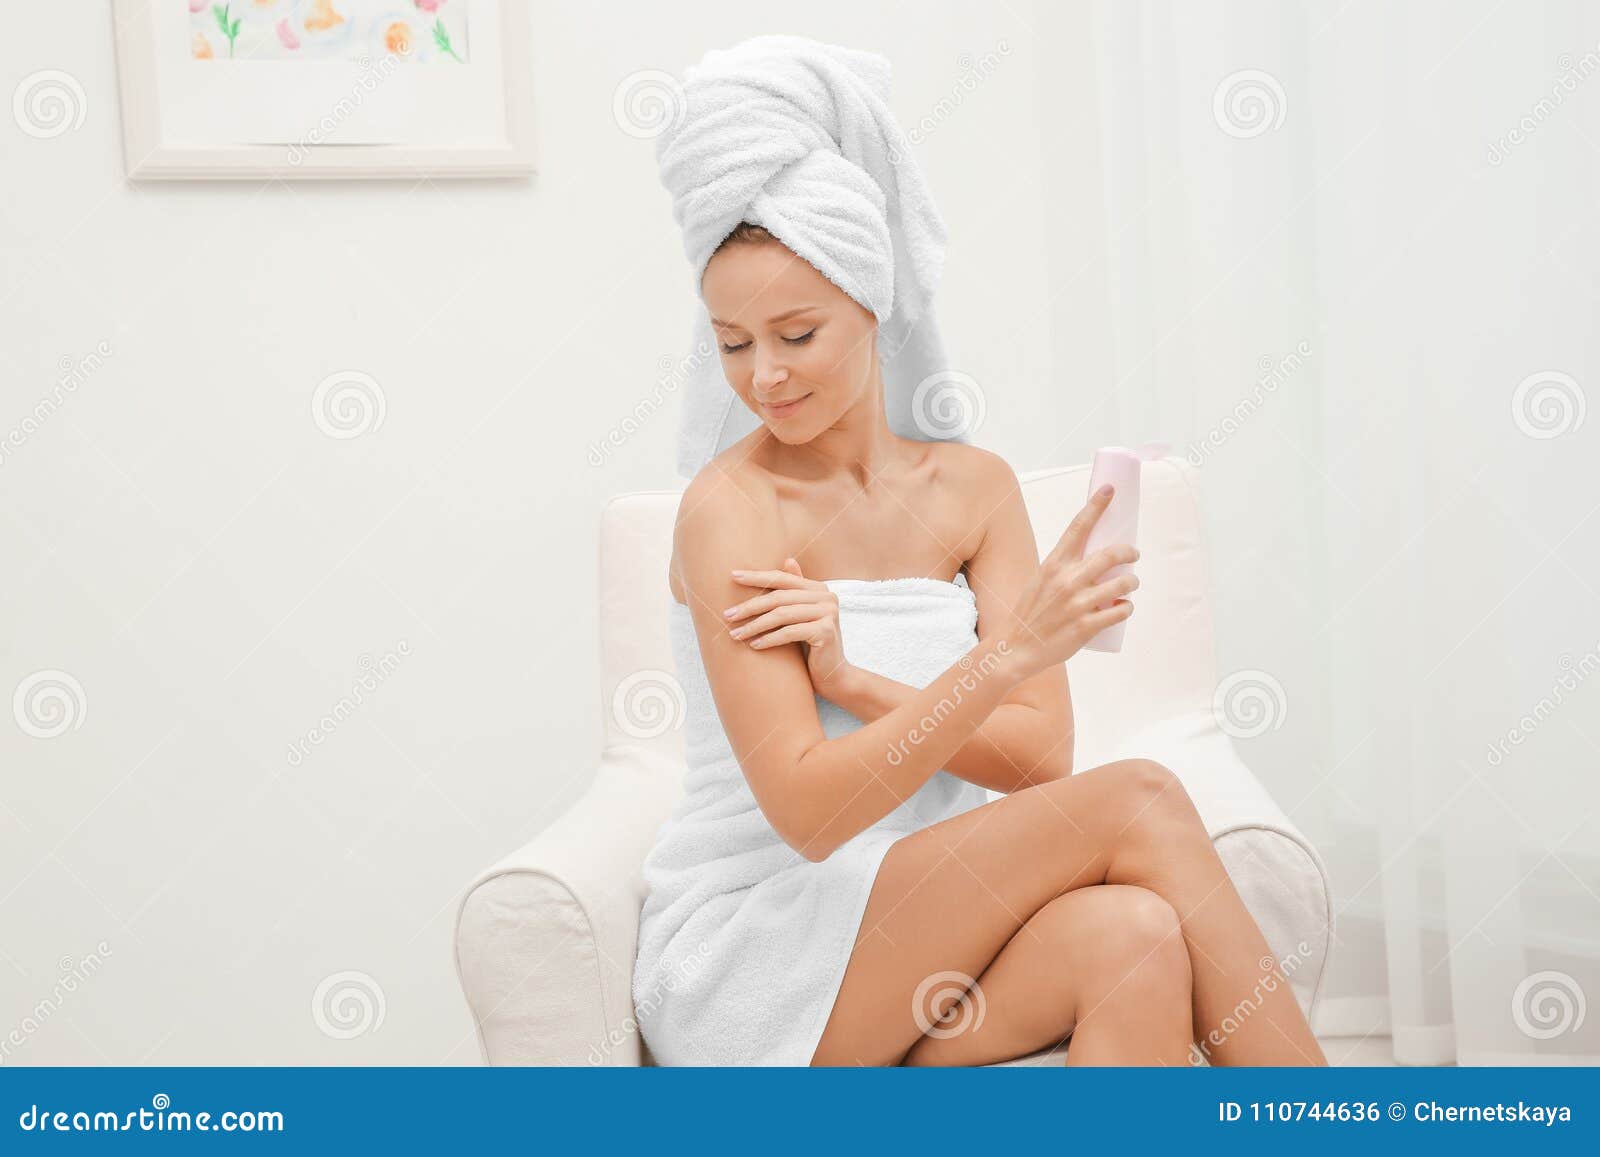 Жена после ванны. Девушка наносит крем на тело полный рост. Фото девушка наносит крем на тело. Девушка в халате наносит крем. Женщина блондинка после ванны.